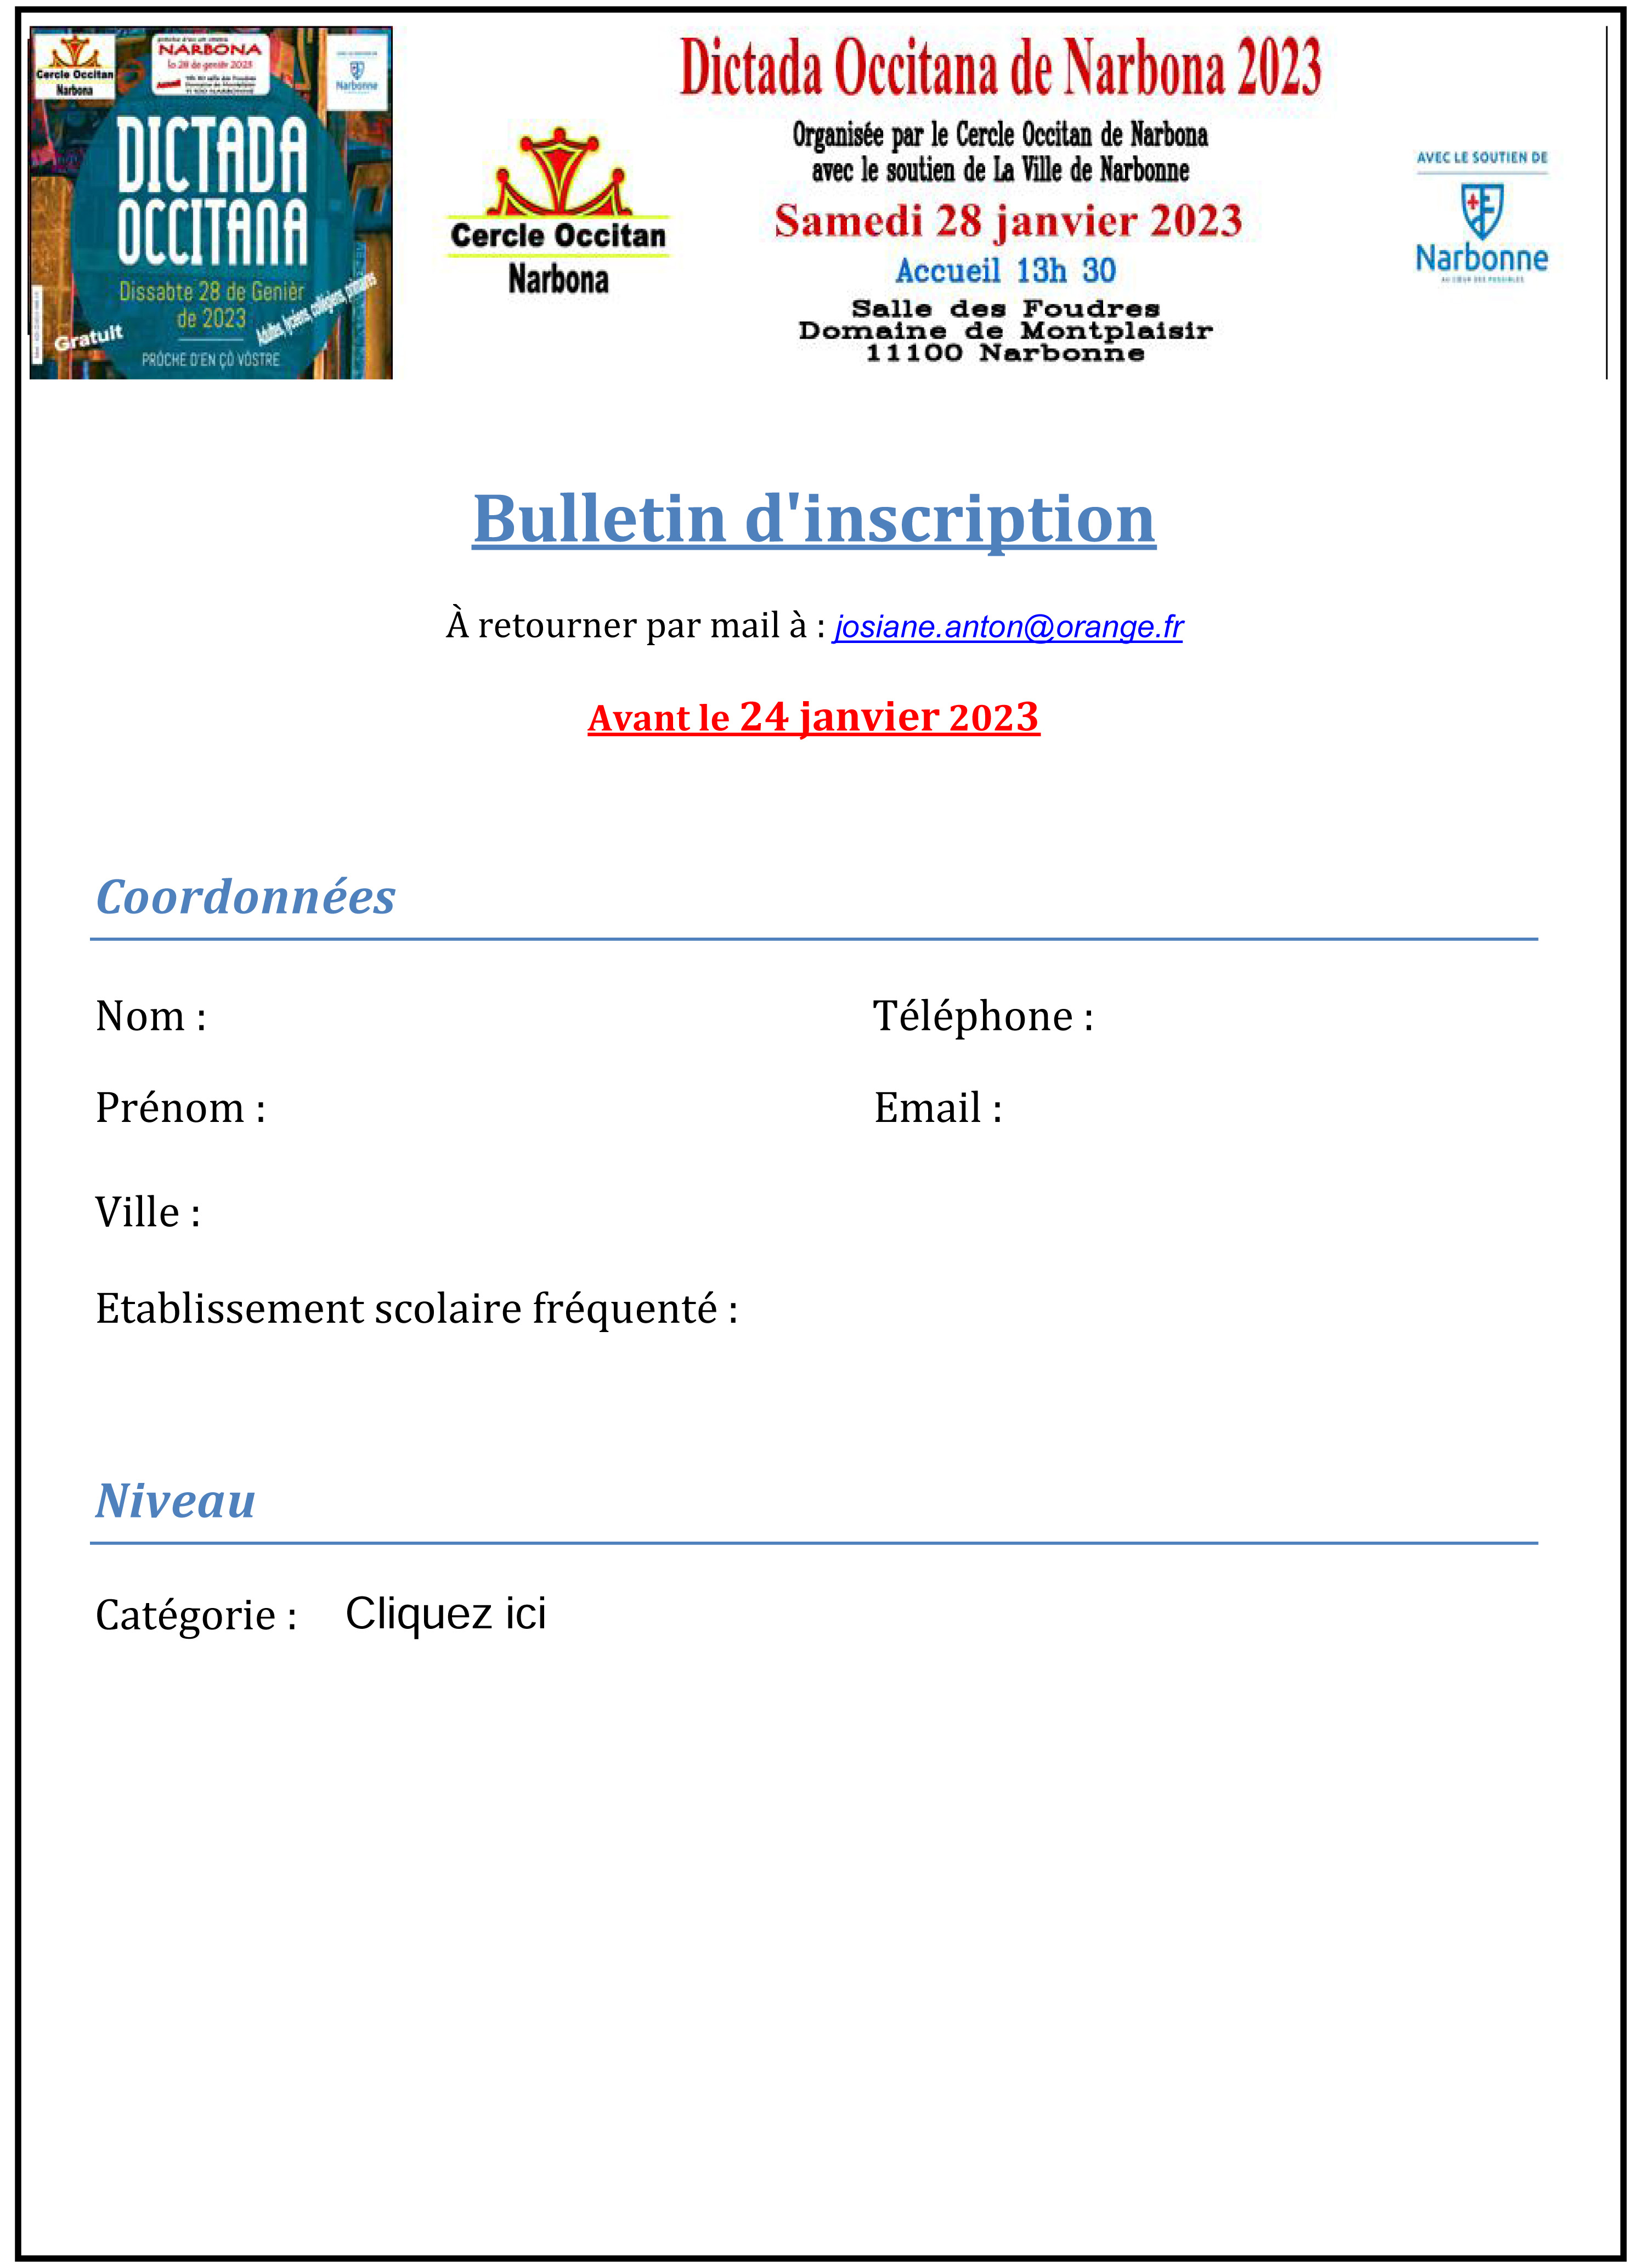 Formulaire Inscription Dicte Occitane NARBONNNE 2023